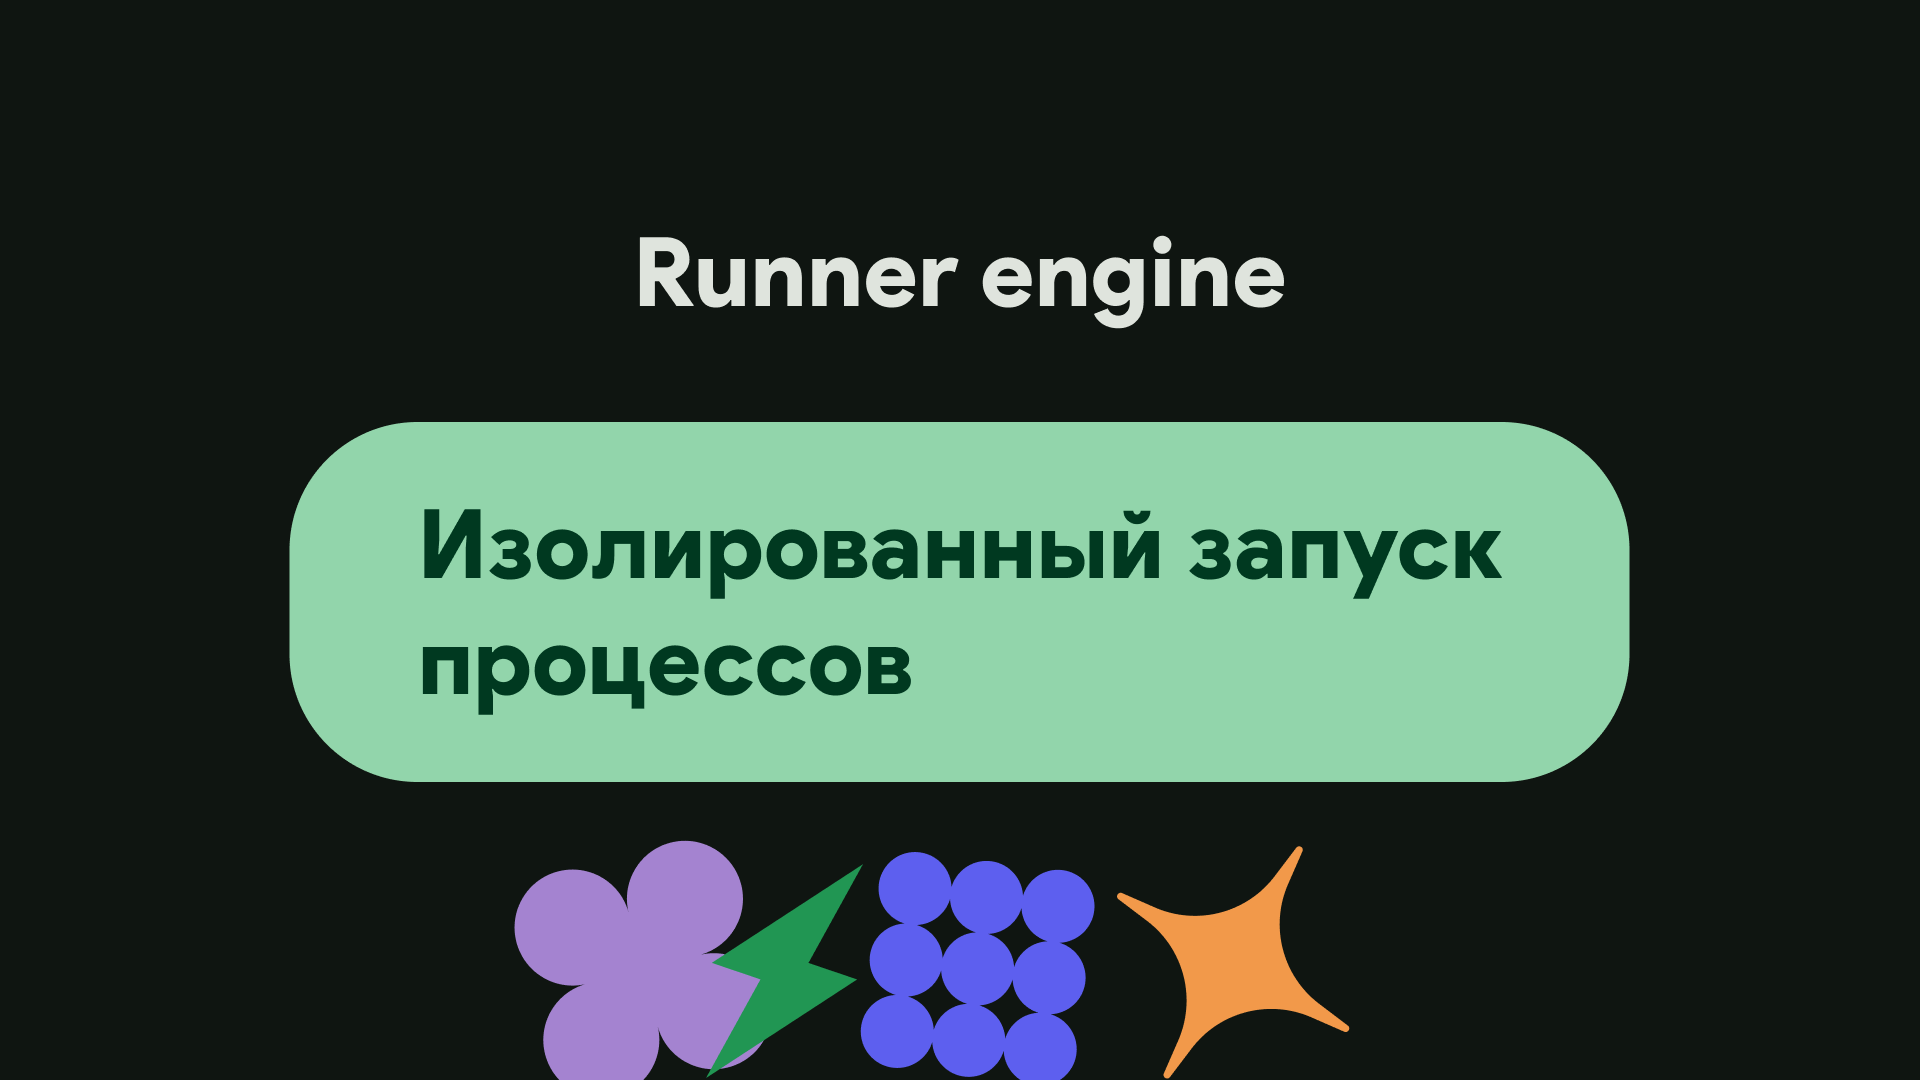 Отрывок презентации про runner engine из доклада команды разработчиков Elan (листайте)